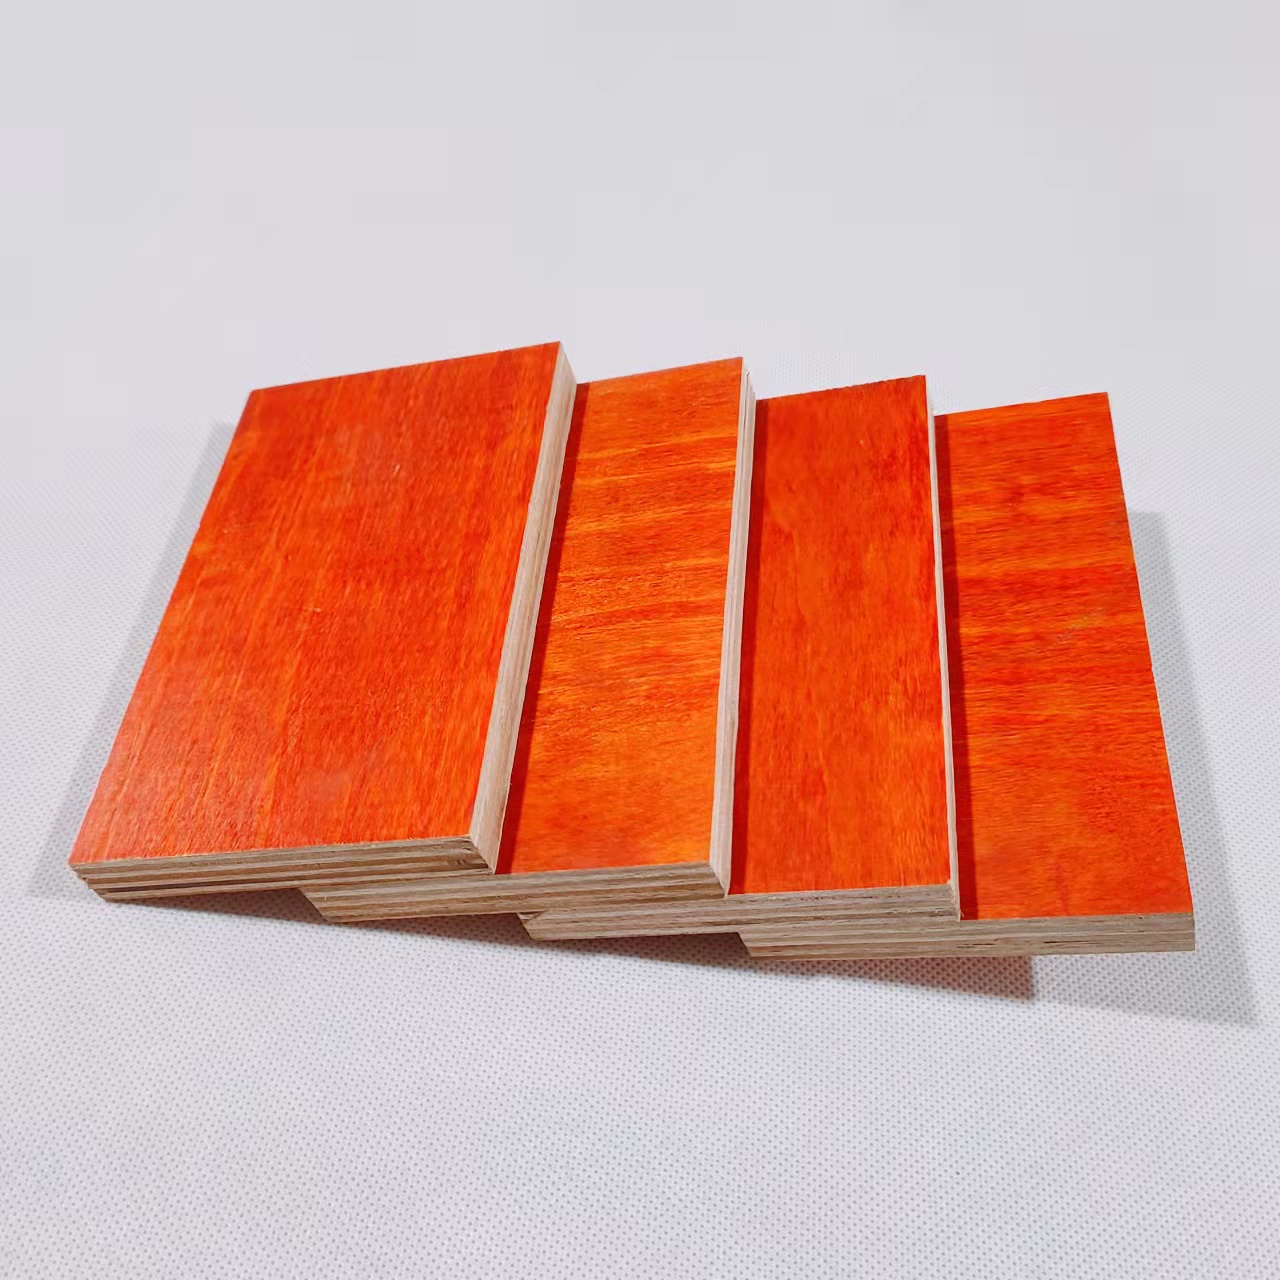 Најквалитетна фурнирска табла во црвена боја со материјал од бор и еукалиптус